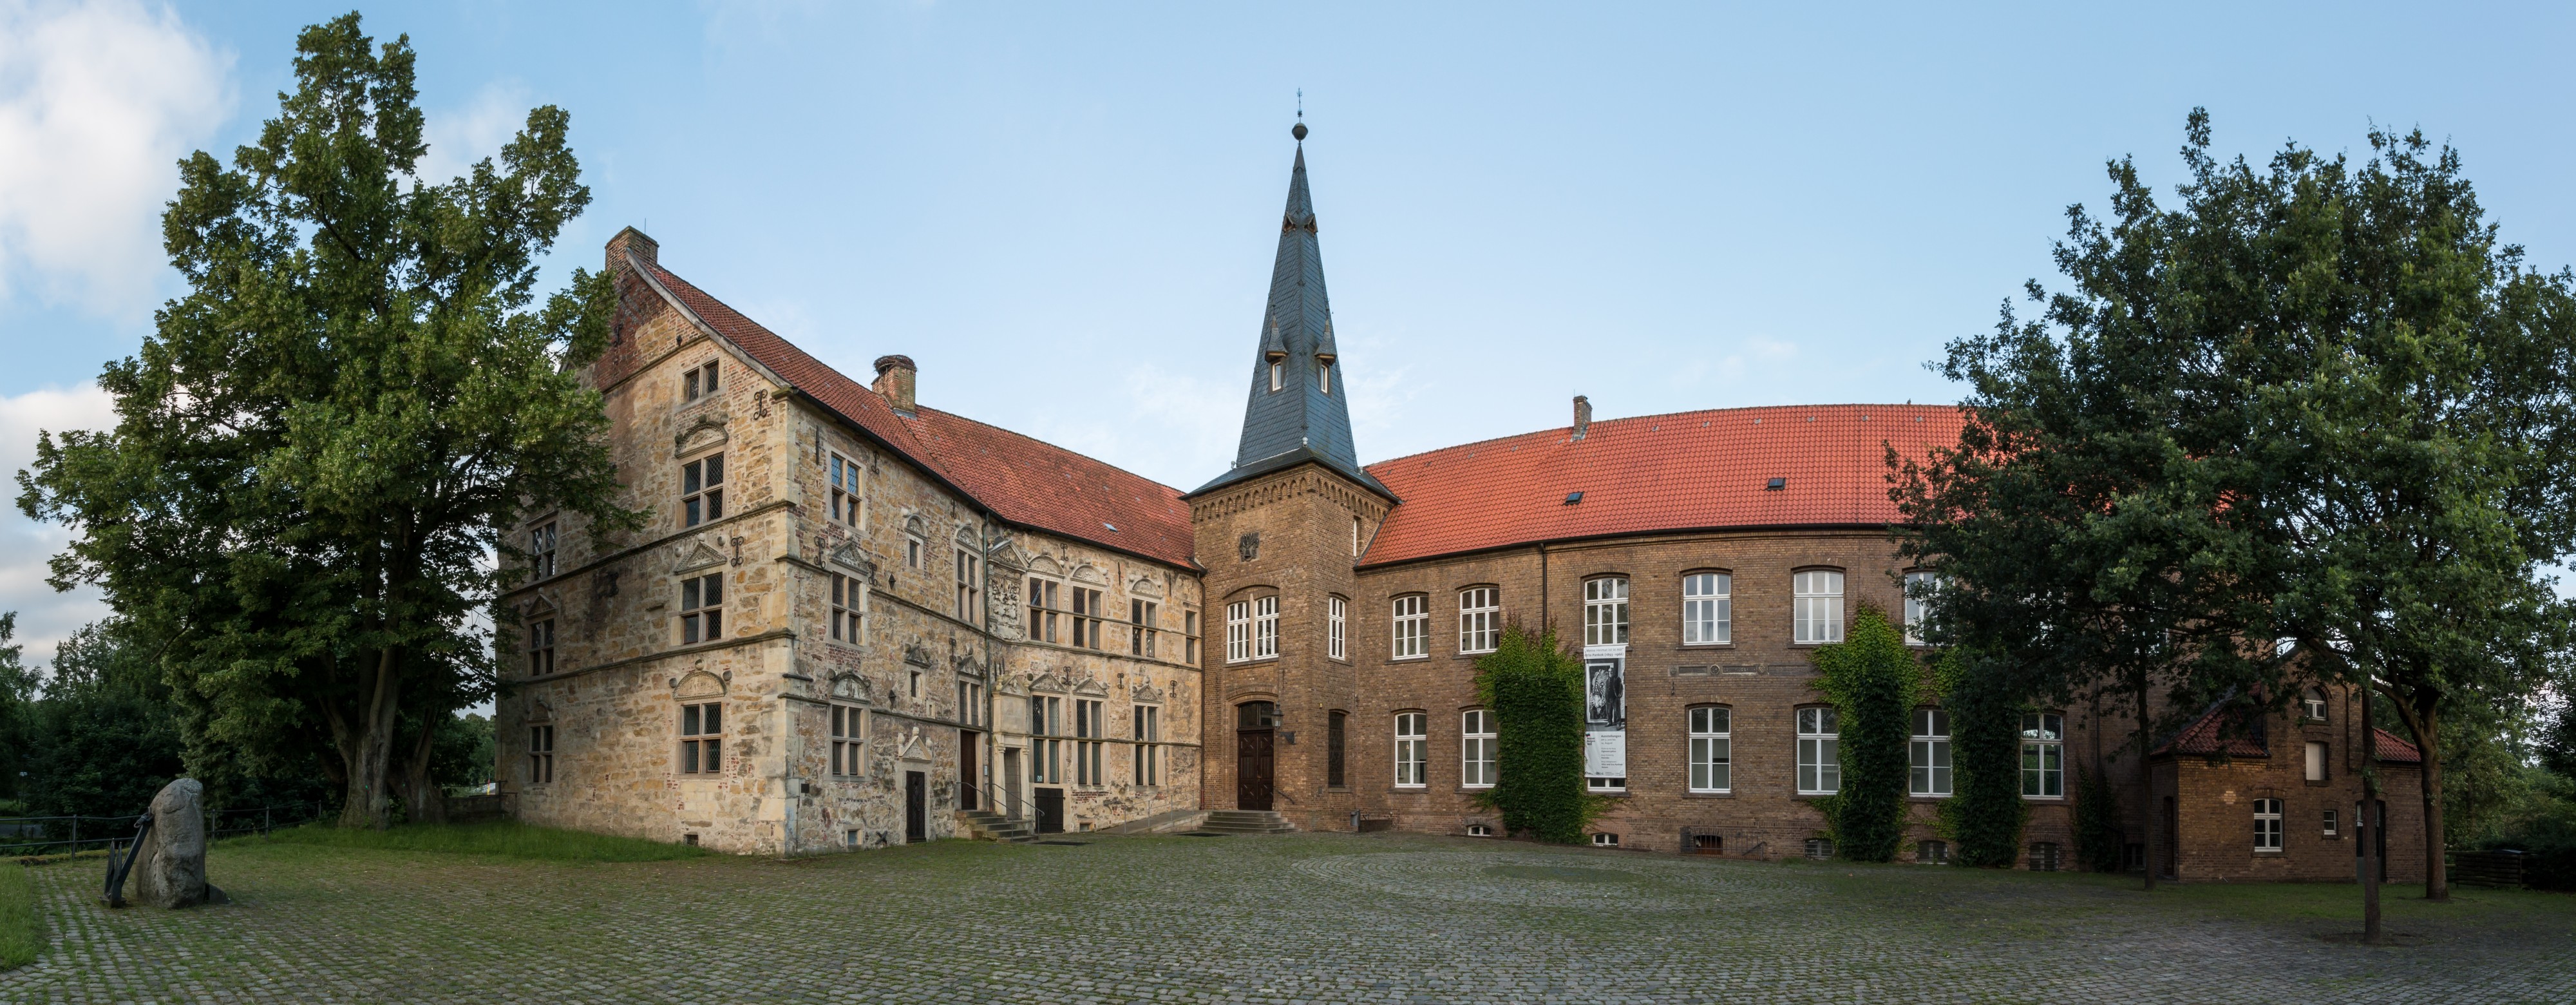 Lüdinghausen, Burg Lüdinghausen -- 2016 -- 3577-80